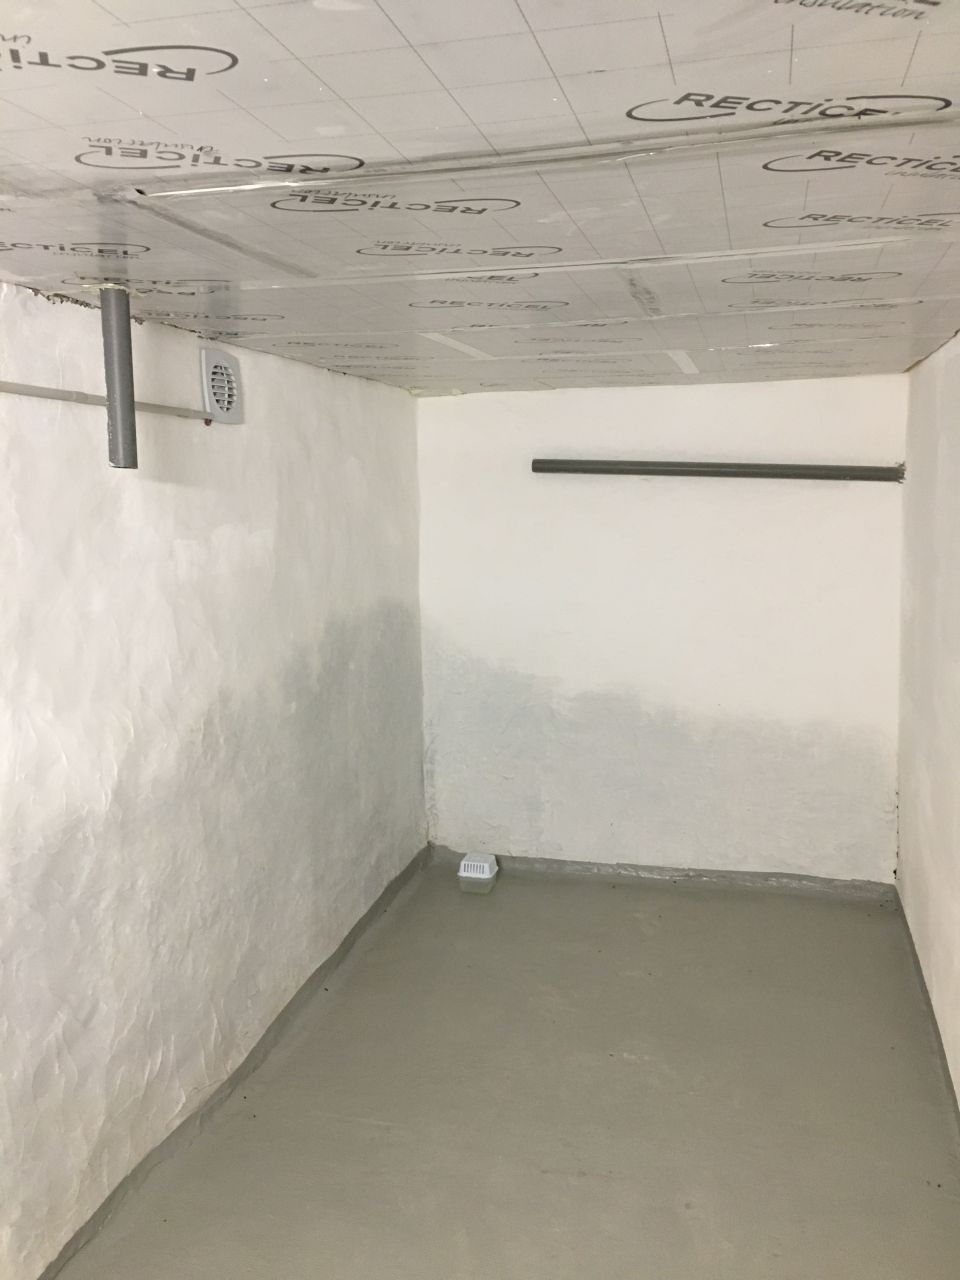 Un morceau du sous-sol termin : enduit + chaulage, isolation de la dalle, peinture au sol, extracteur, tuyaux d'vacuation de la salle de bain au-dessus en attente